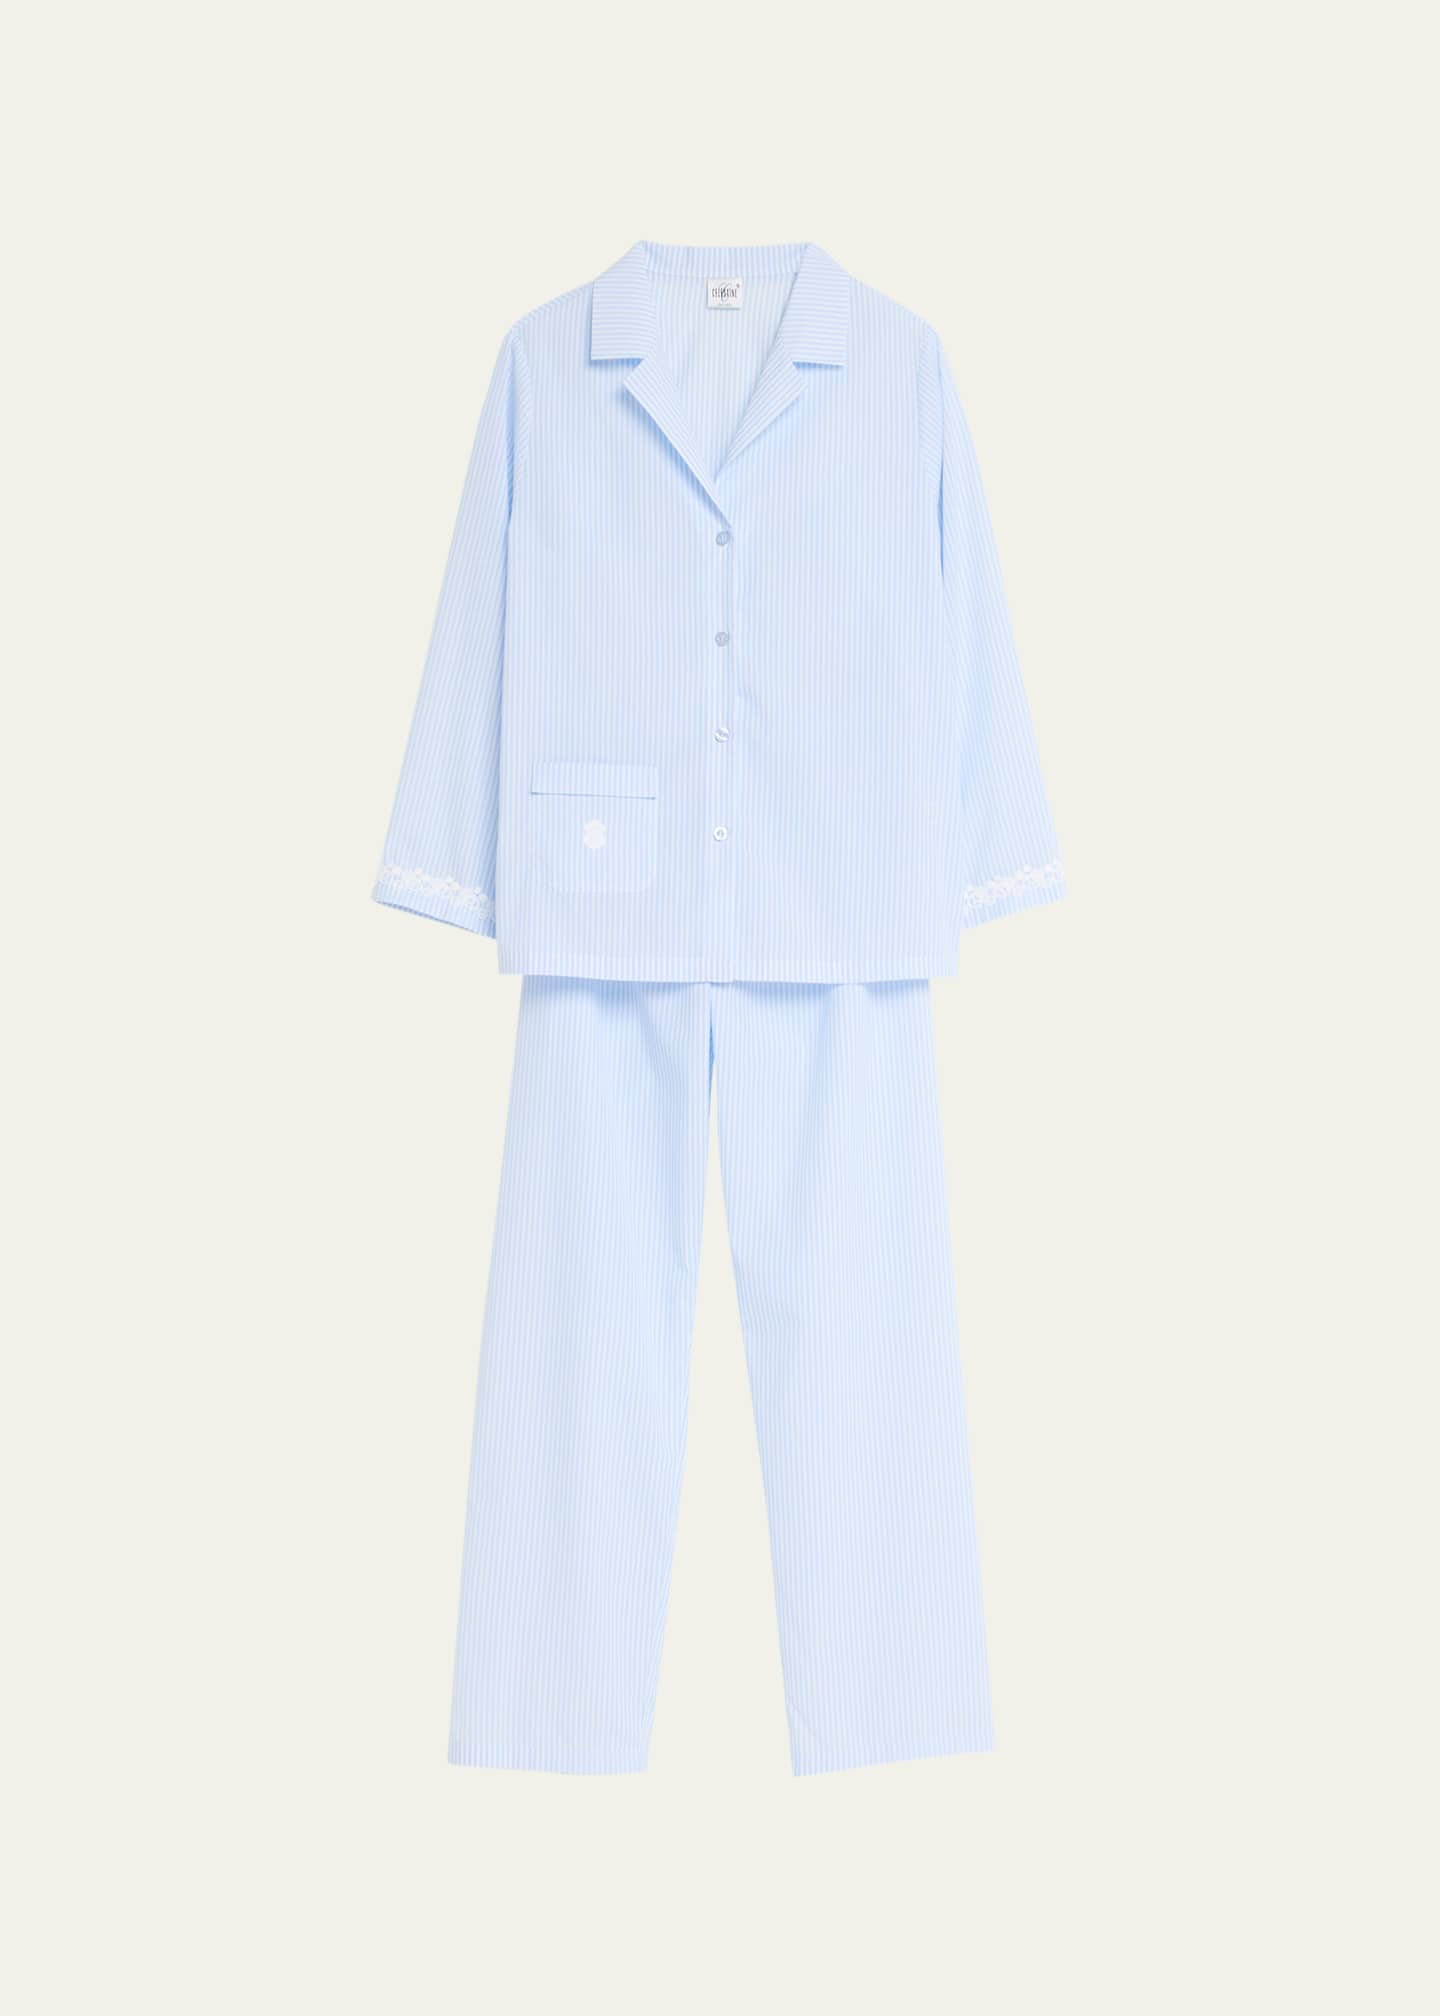 Celestine Capri Striped Cotton Pajama Set - Bergdorf Goodman